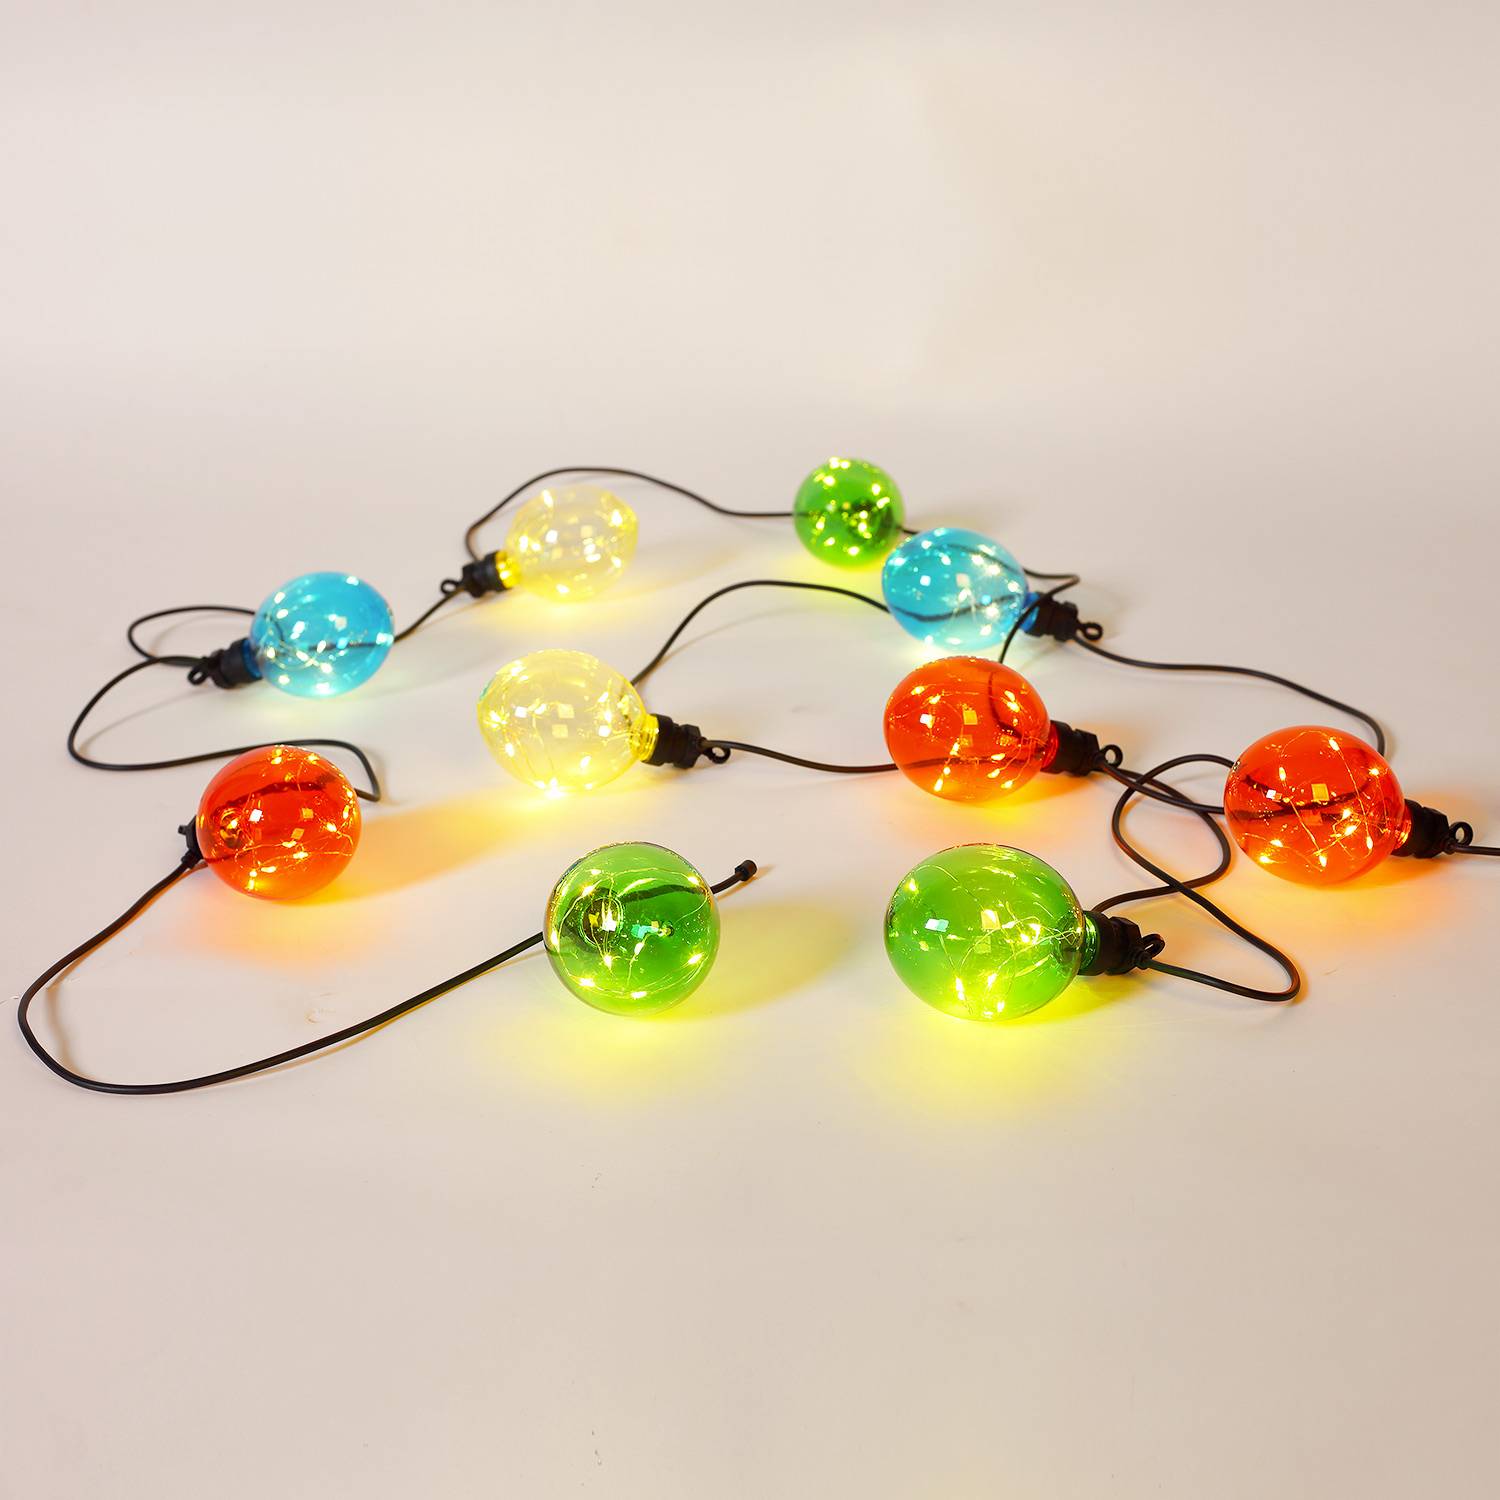 MORPHEE - Kerst lichtslinger voor buiten met 10 lampen, 100 LED's, op batterijen, timerfunctie, 8 modi, 4,5m lang Photo3